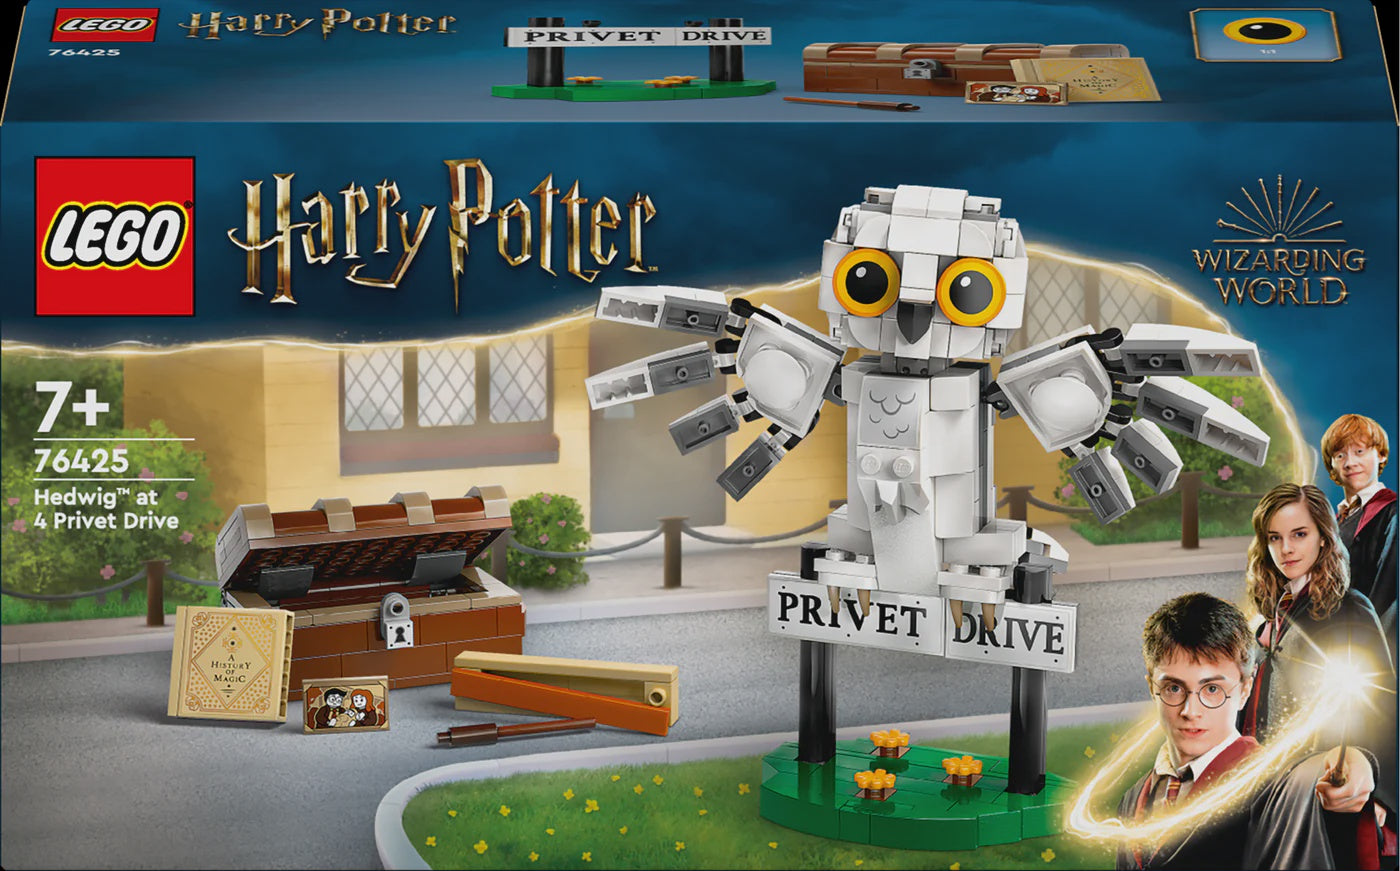 Lego Harry Potter 76425 Hedwig at 4 Privet Drive